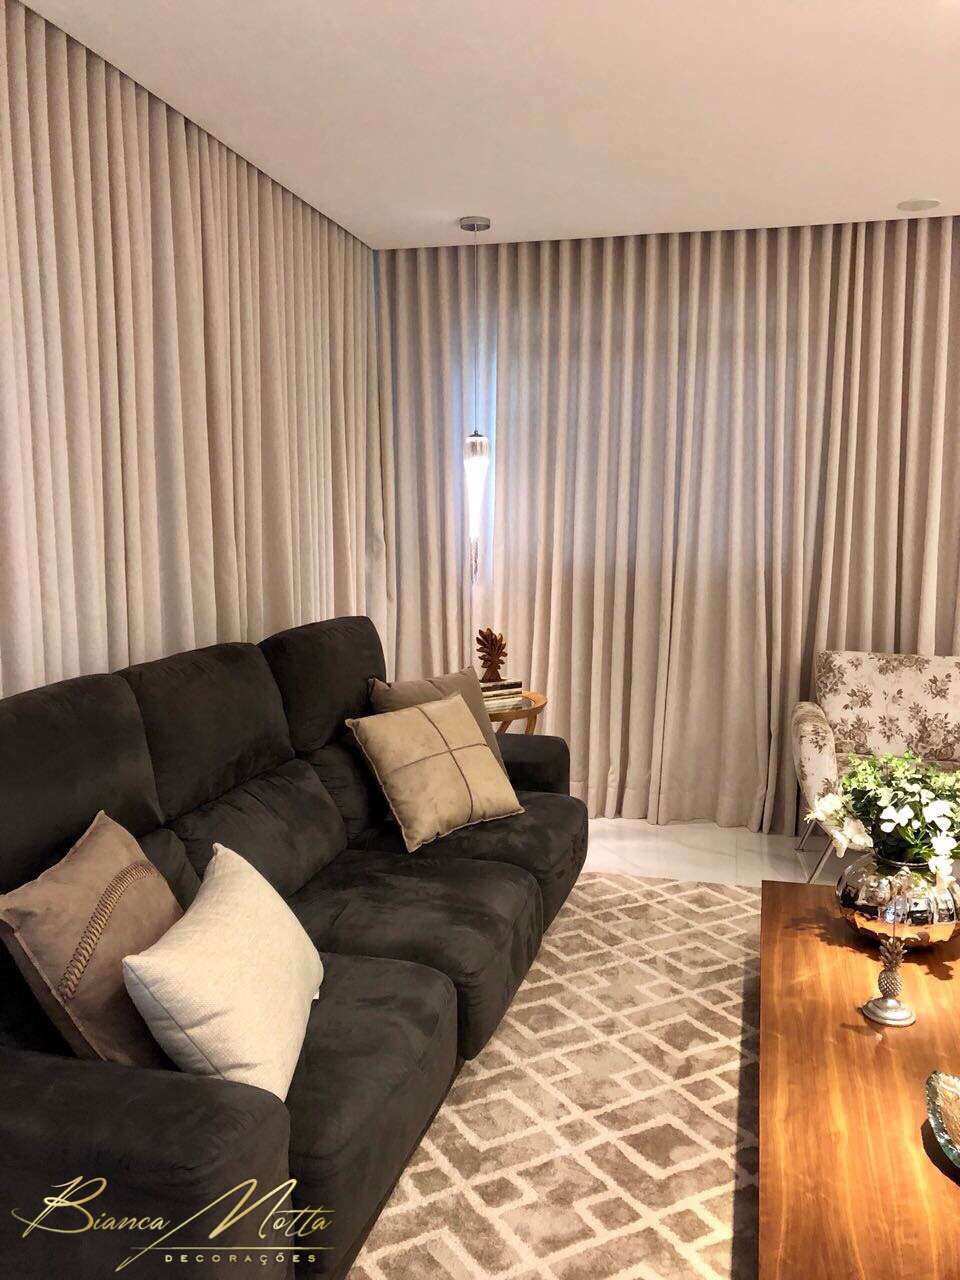 Como decorar sofá com mantas e almofadas? Bianca Motta